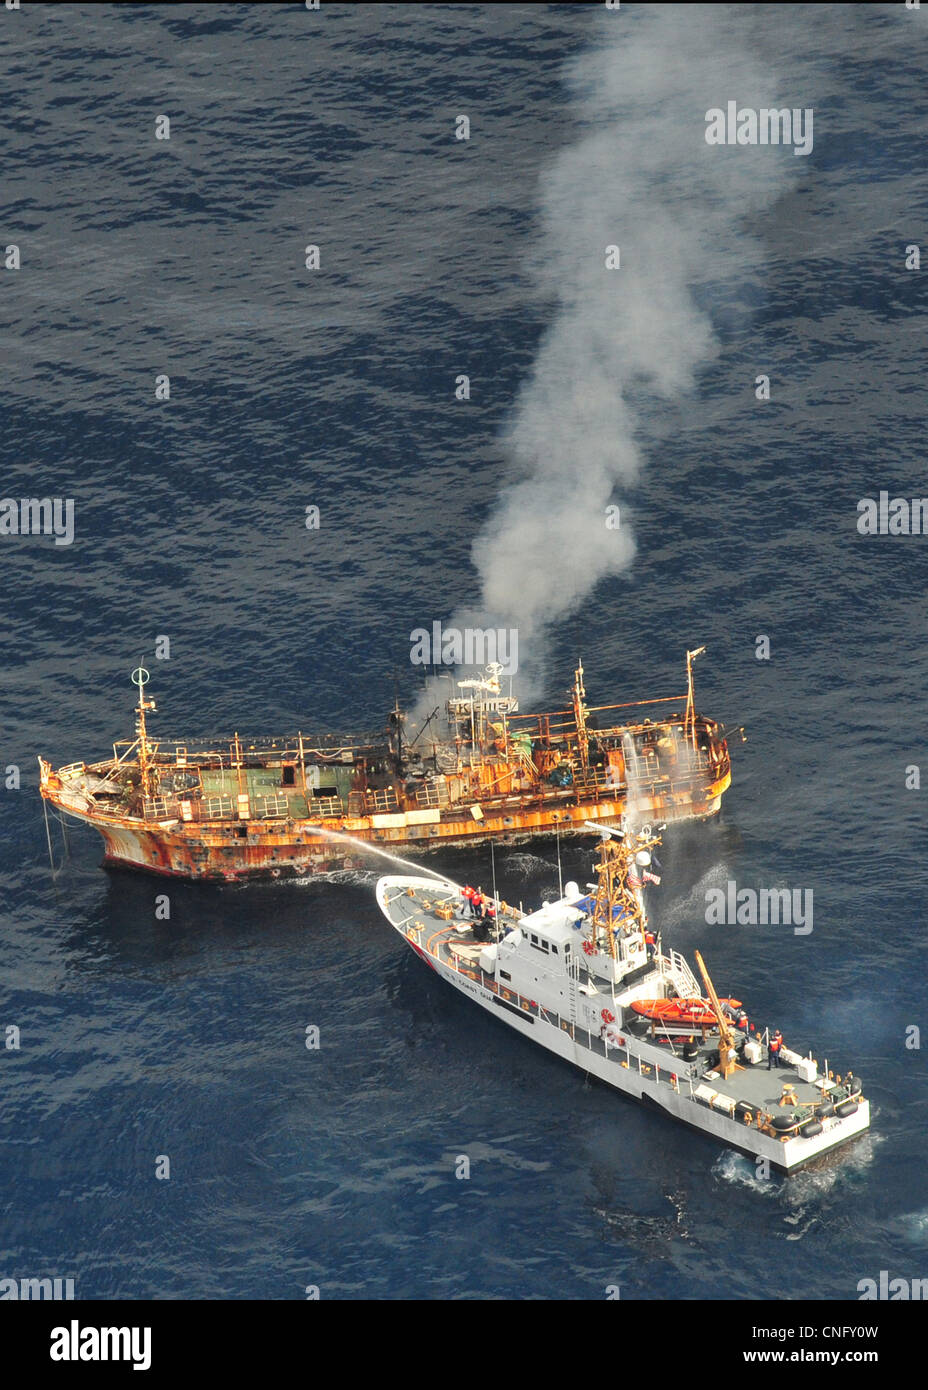 Il Giapponese peschereccio Ryou-Un Maru ustioni dopo la US Coast Guard  Cutter Anacapa (destra) sparò su di esso con munizioni esplosive Aprile 5,  2012 nel Golfo di Alaska. Il peschereccio conosciuta come